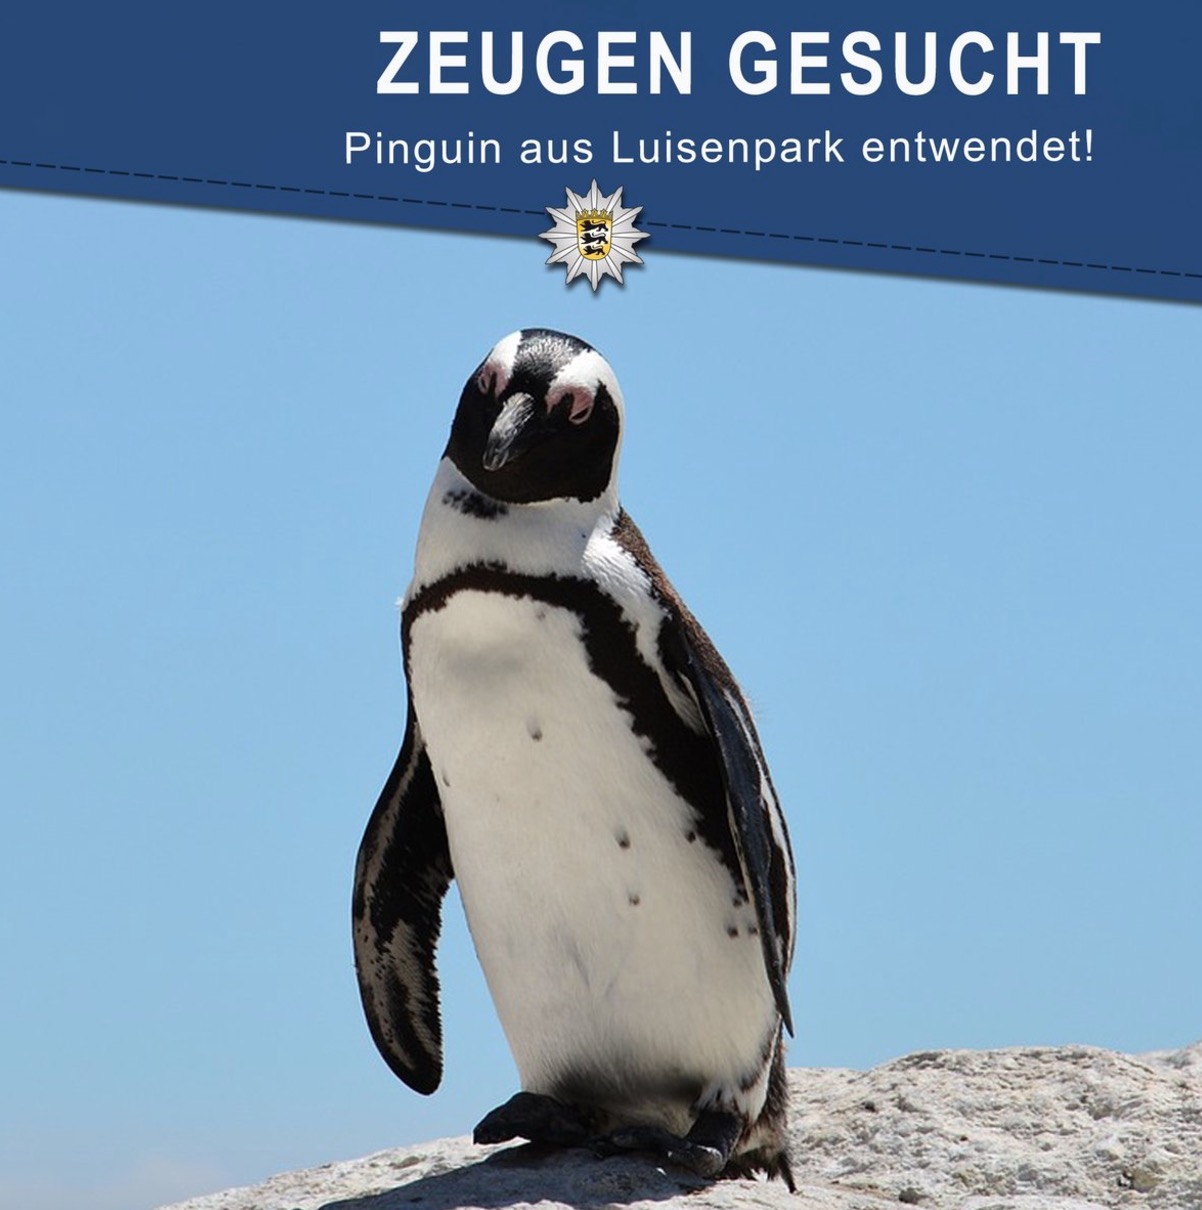 Pinguino rapito dallo zoo di Mannheim. L'appello della polizia: "Restituitelo o morirà"